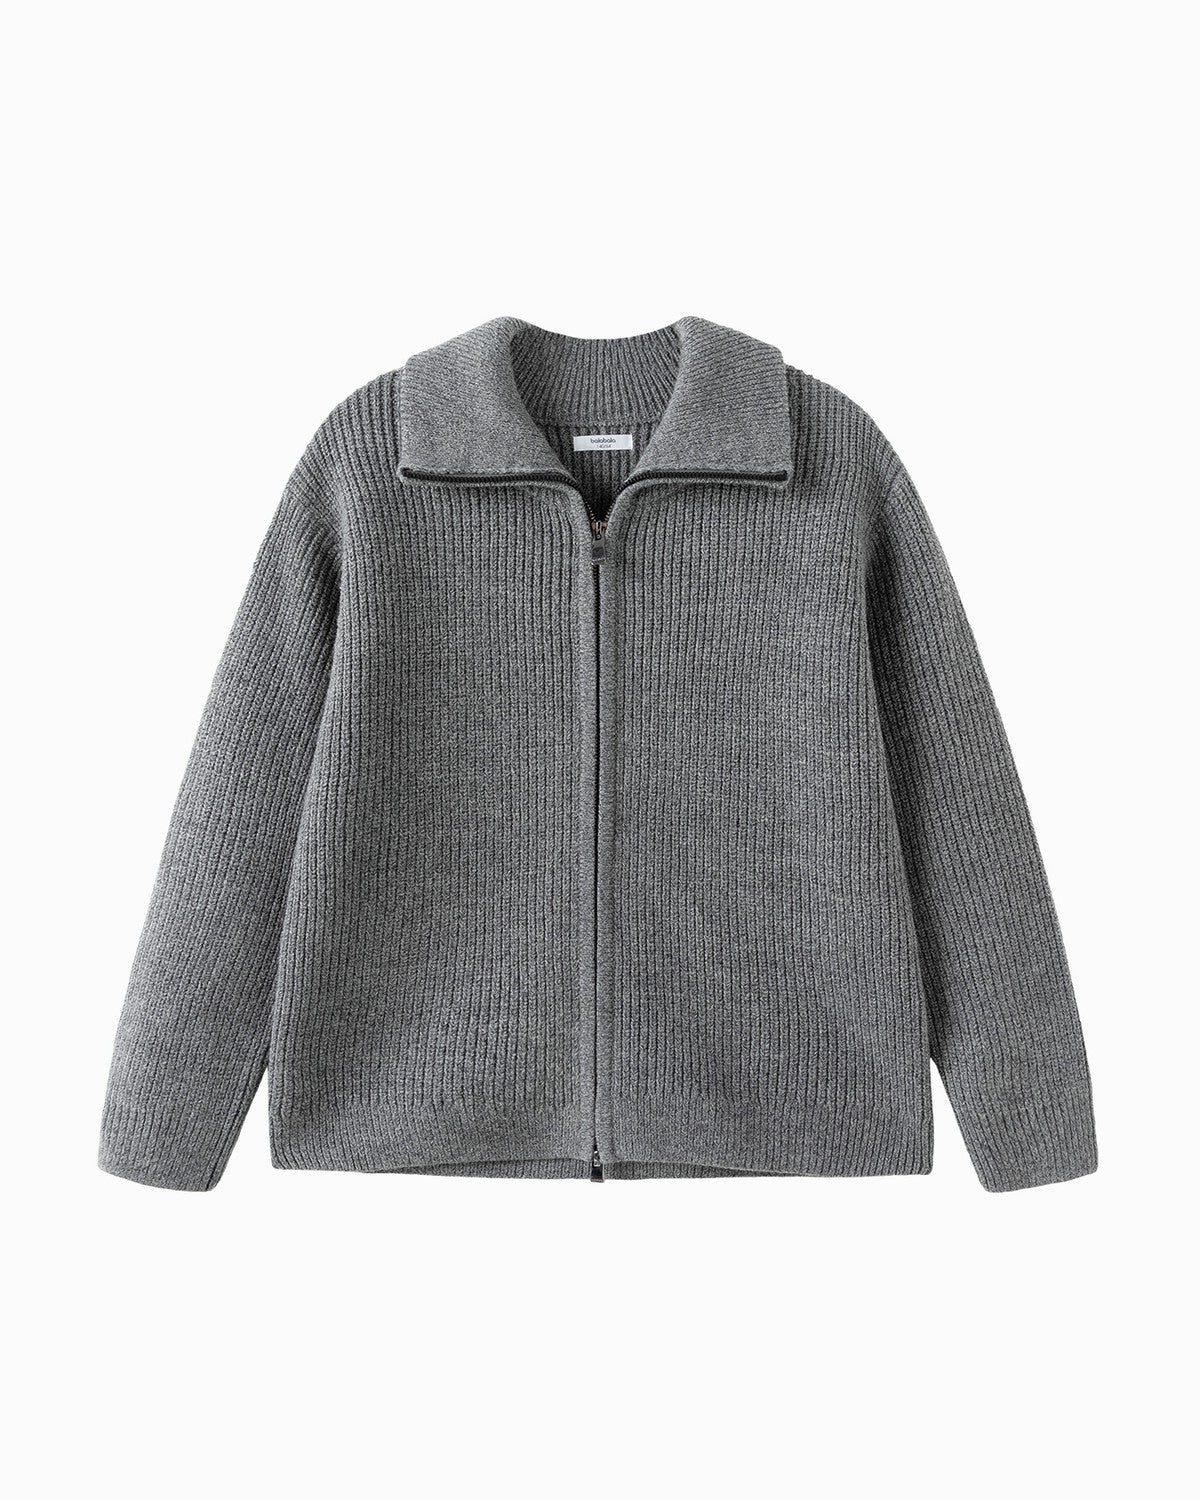 Balabala Kids Unisex Medium Melange Gray Sweater